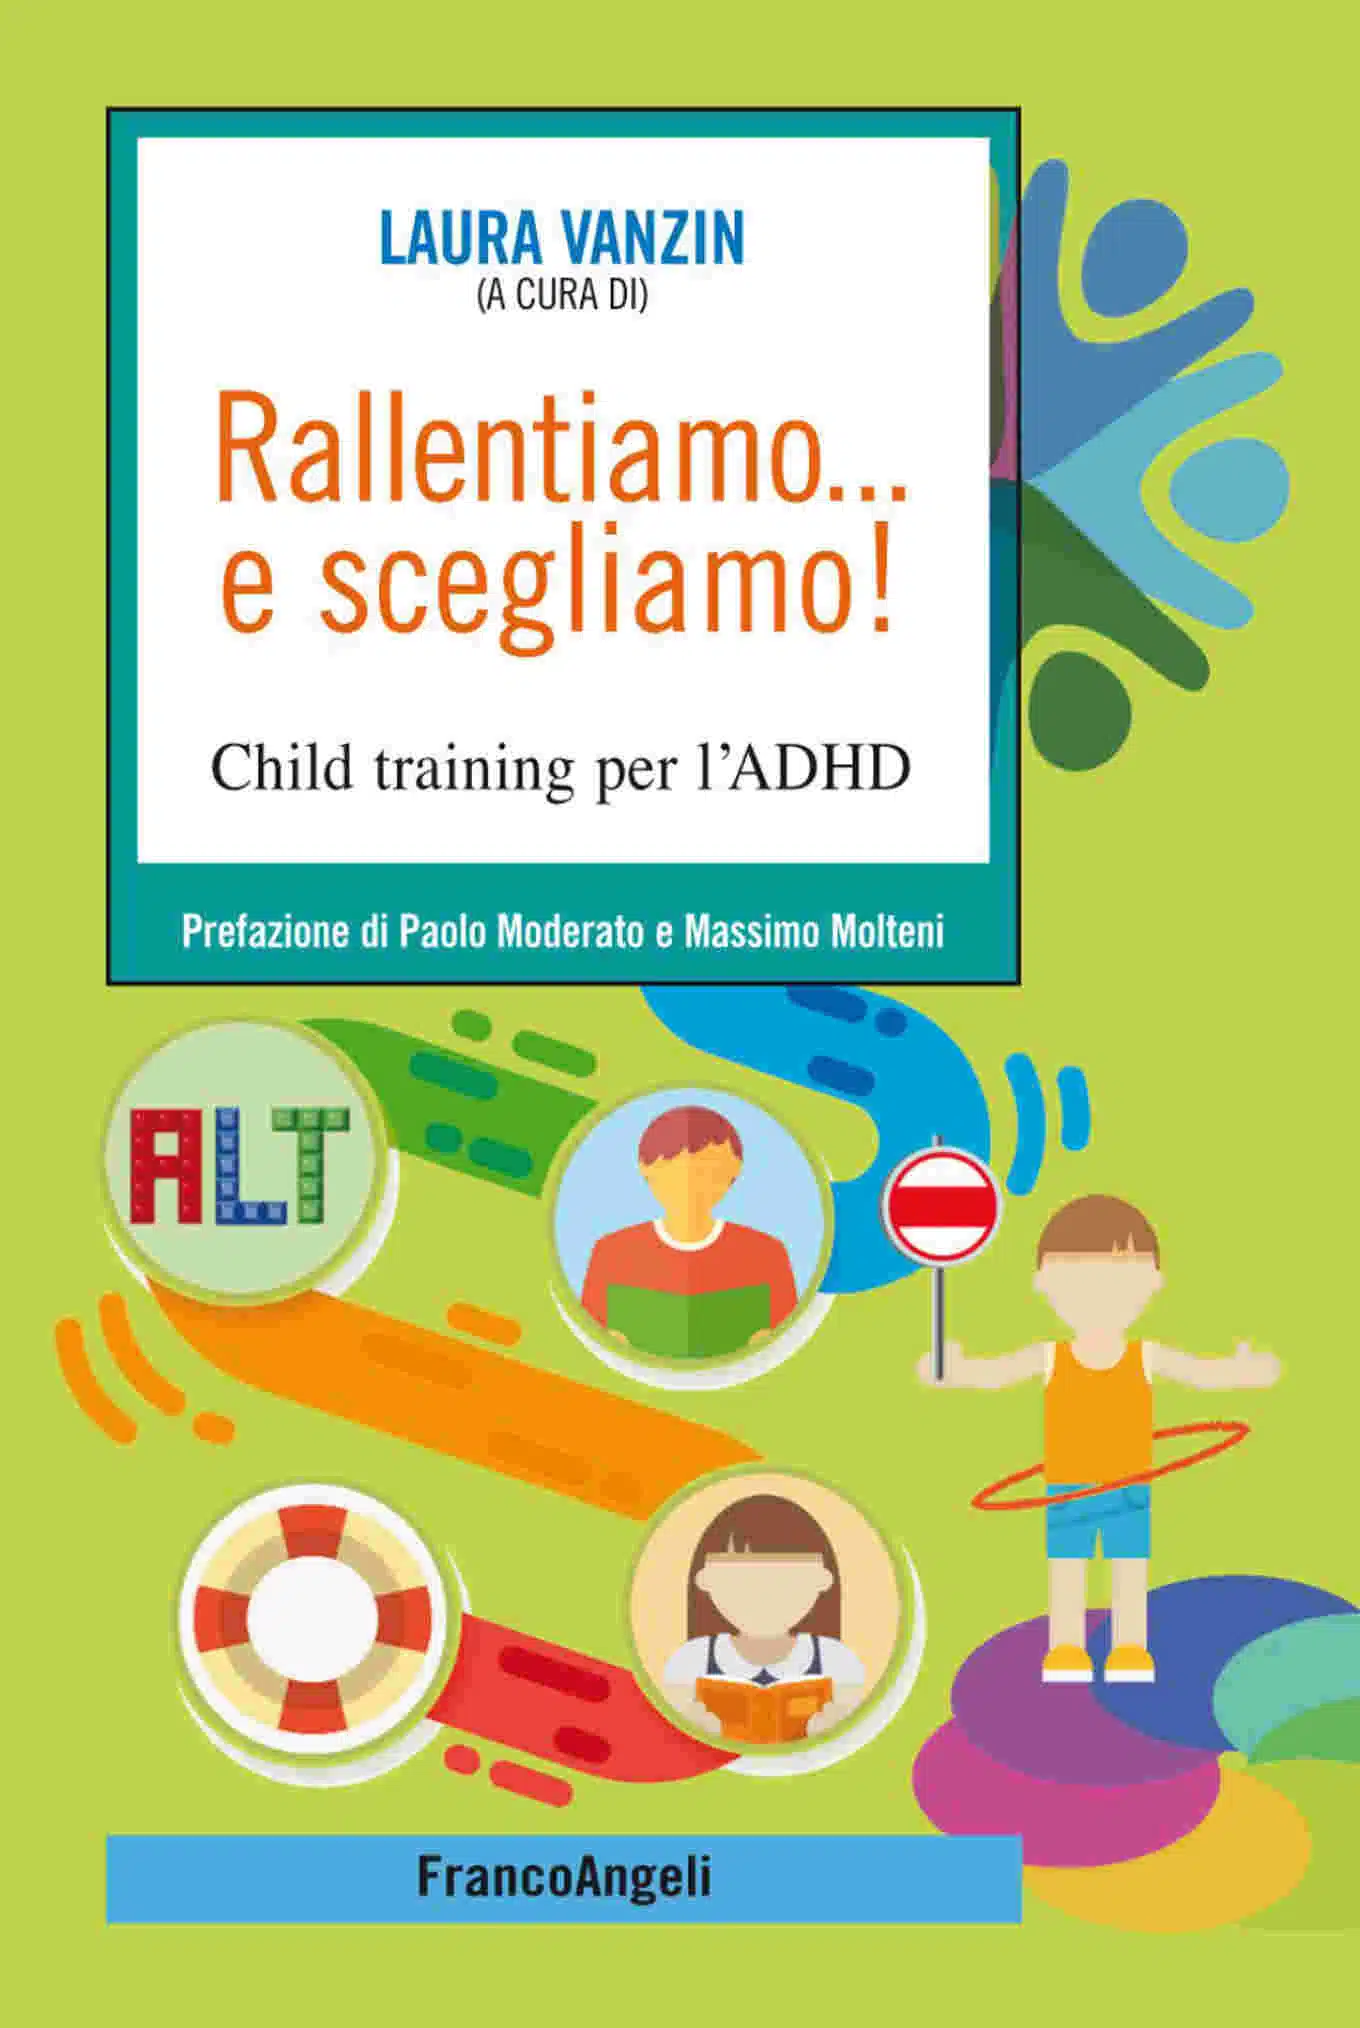 Rallentiamo... e scegliamo! Child training per l’ADHD (2018) - Recensione FEAT